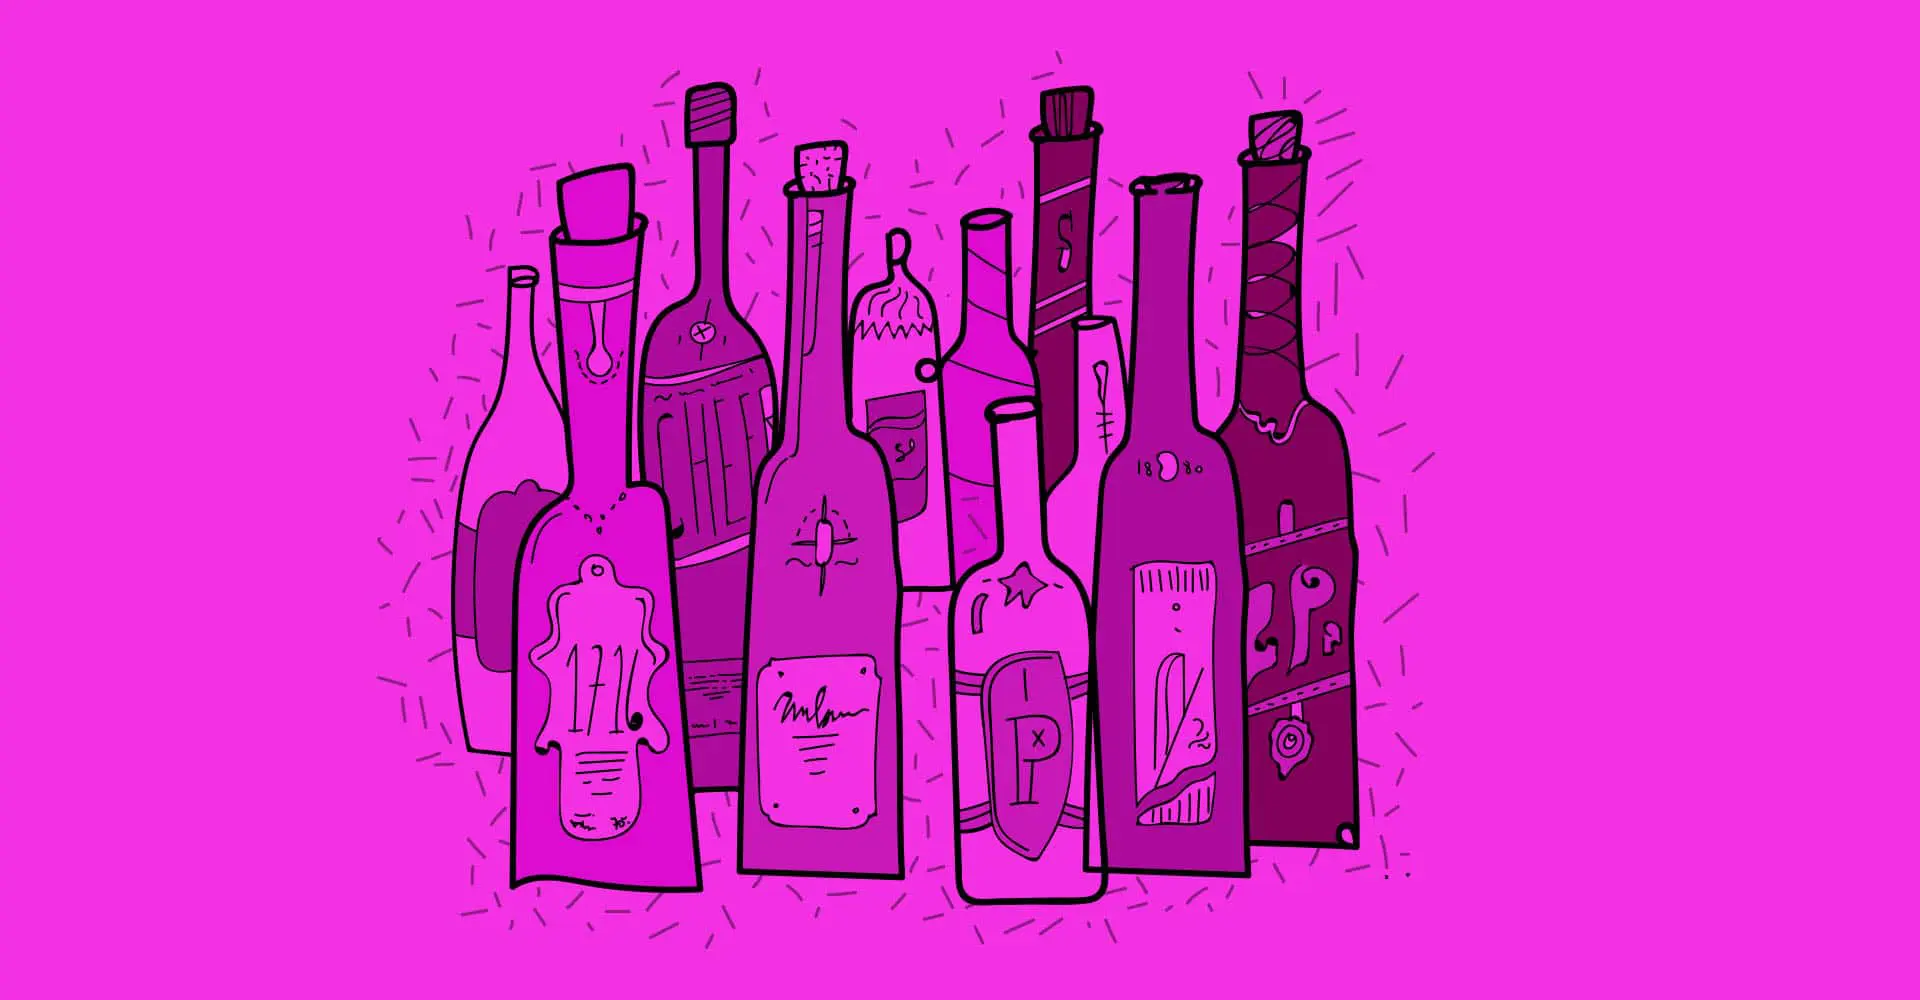 תוויות לבקבוקים עם השבחות דפוס איכותיות כמו למינציה, לכה והבלטה לבקבוקי בירה, יין, אלכוהול ומשקאות בעזרת דפוס דיגיטלי